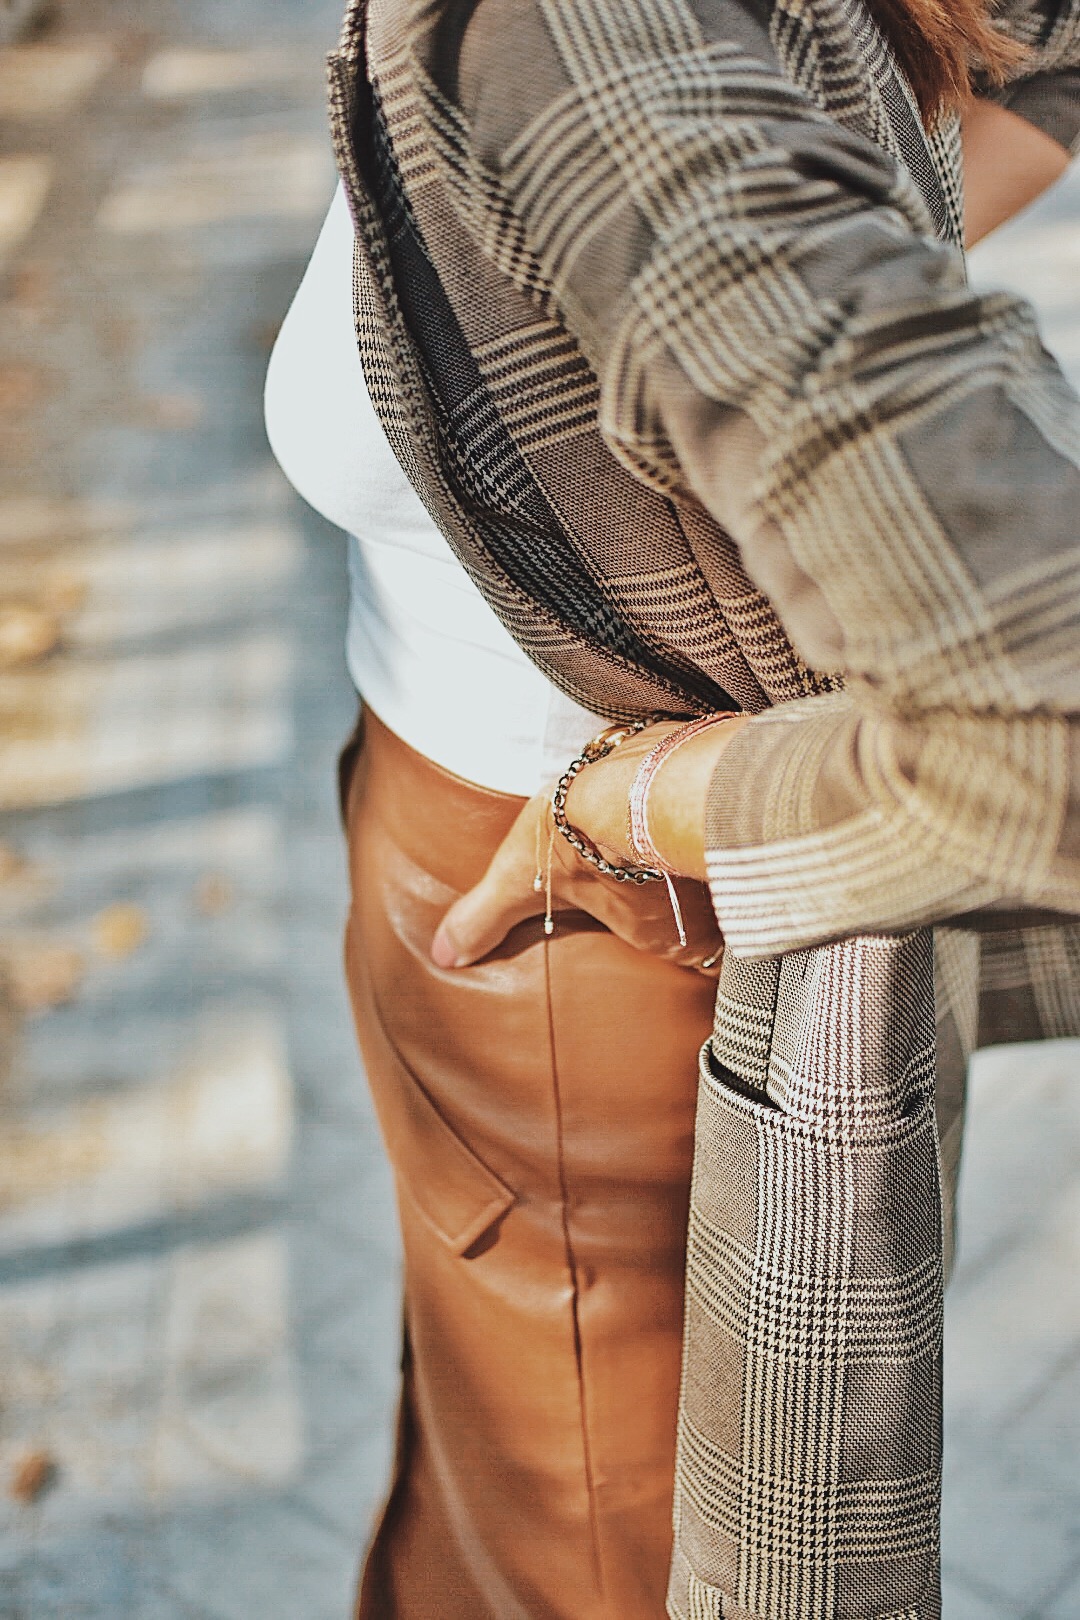 el-blog-de-silvia-look-hm-blazer-cuadros-falda-piel